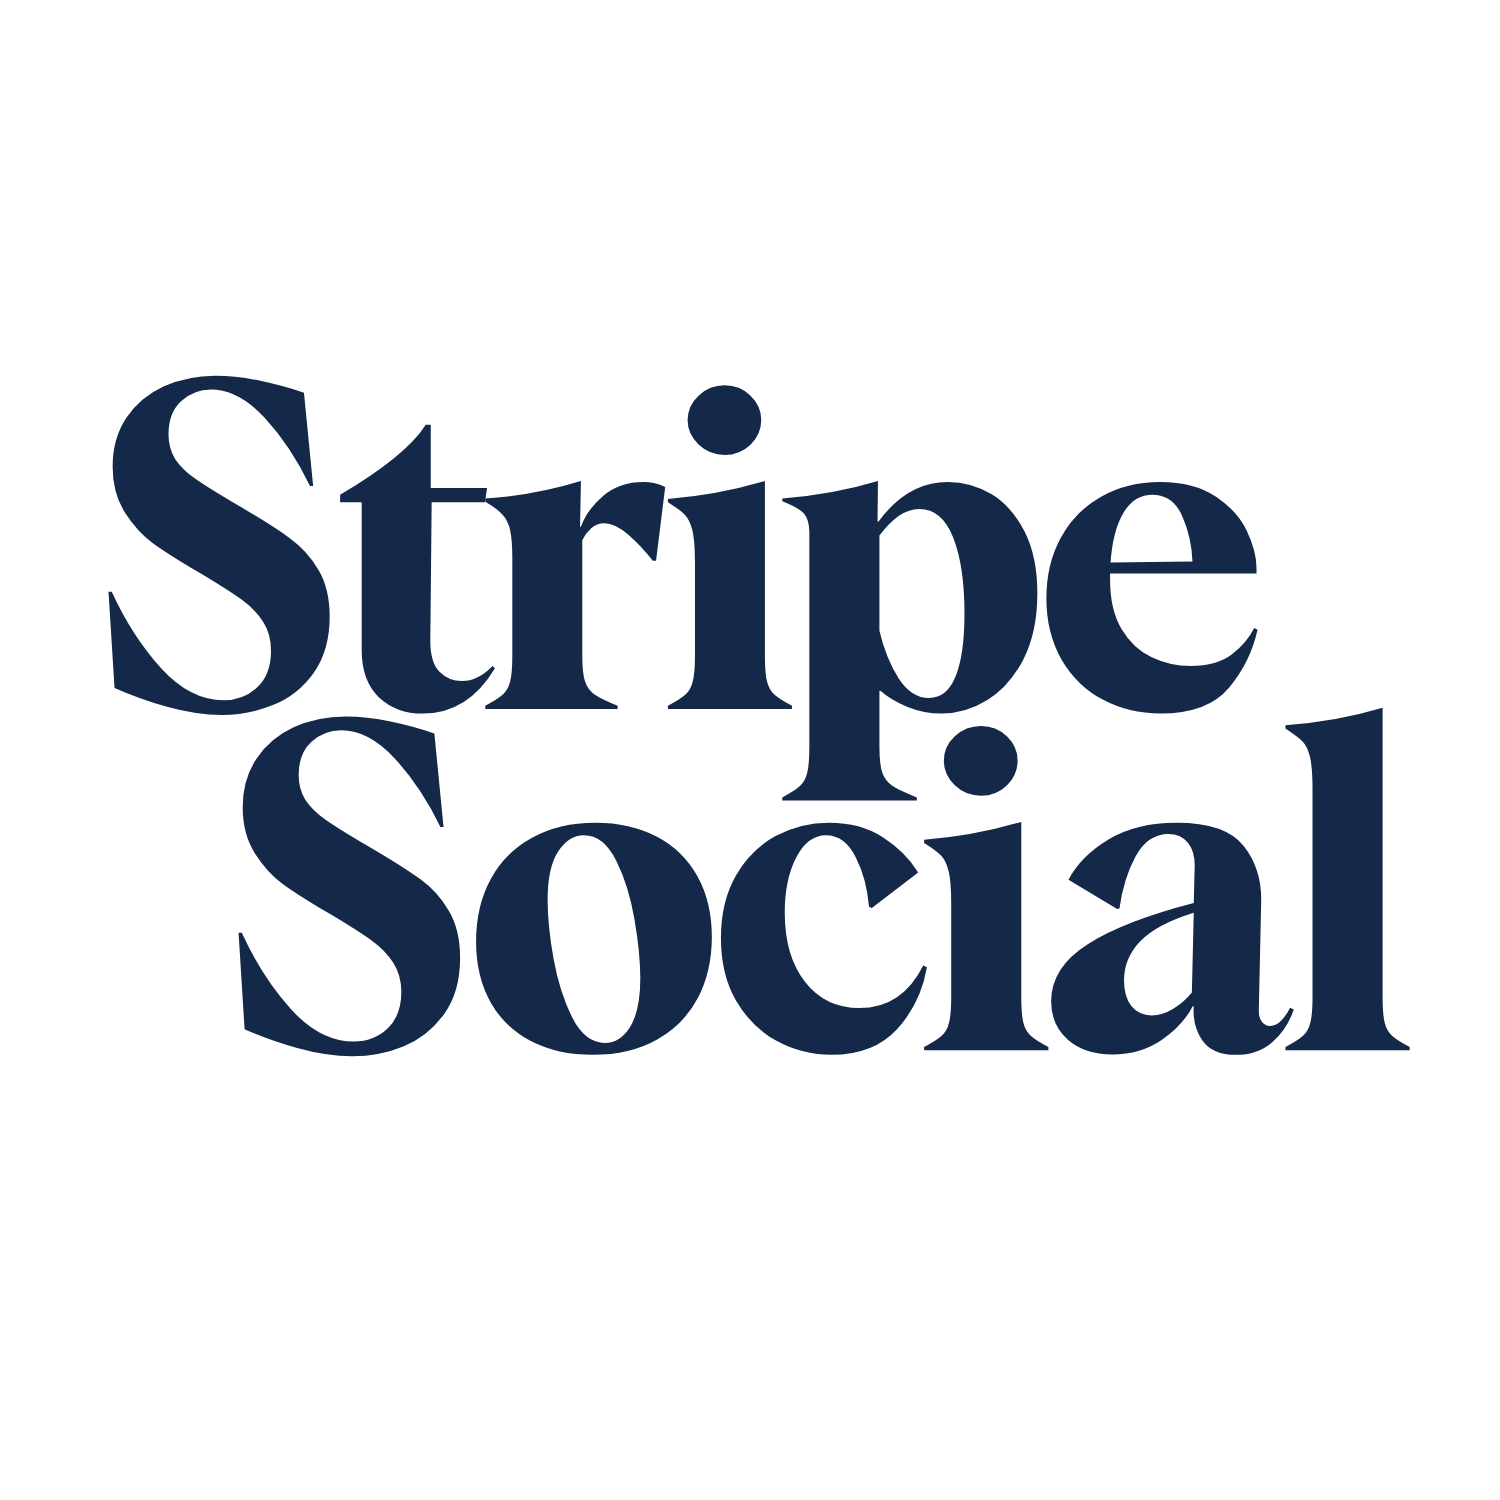 Stripe Social